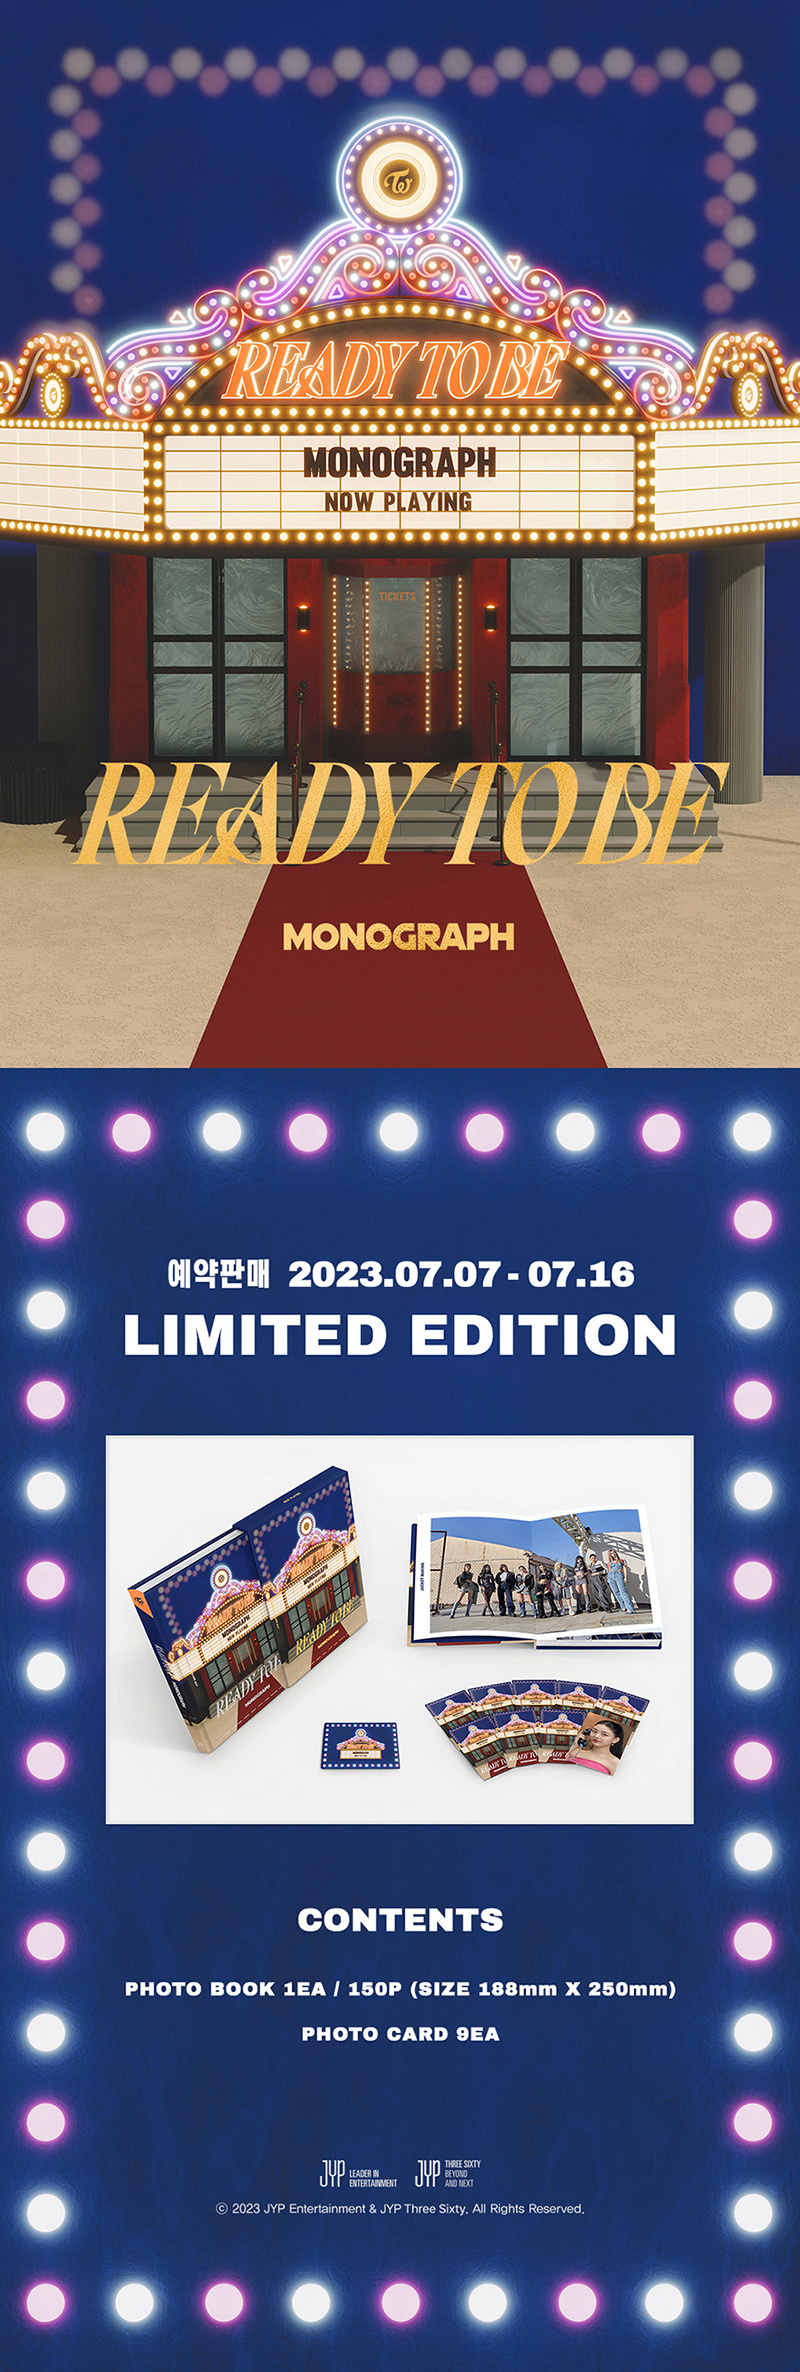 jp.ktown4u.com : TWICE - TWICE MONOGRAPH READY TO BE